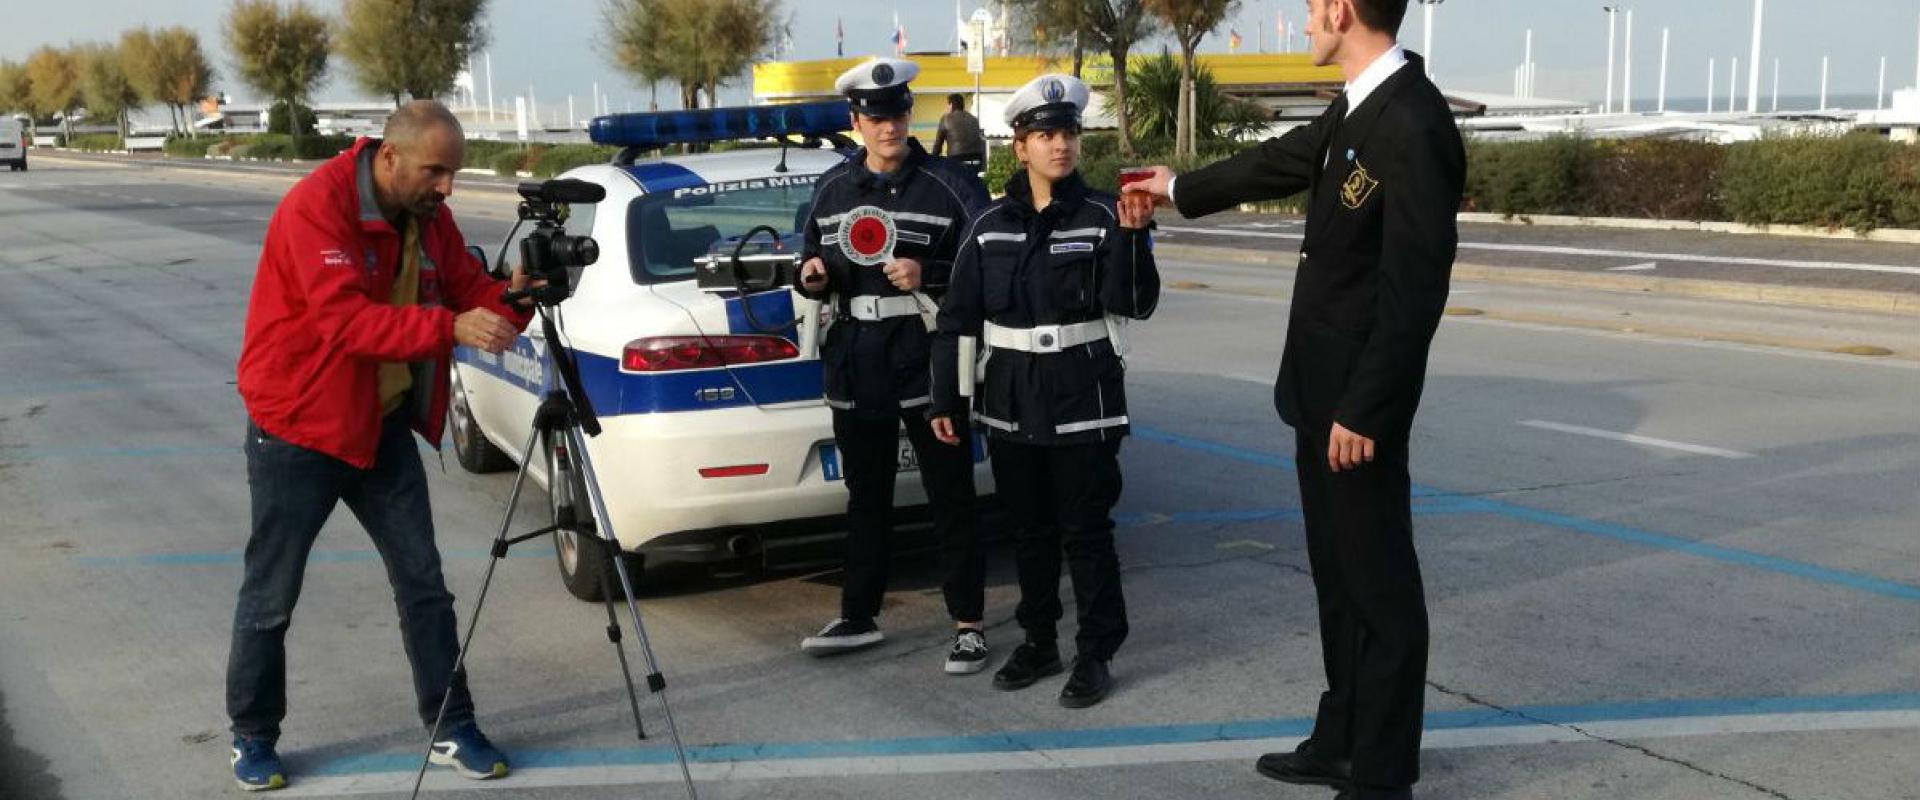 Riprese del vvideo: alunni interpretano agenti della Polizia Municipale